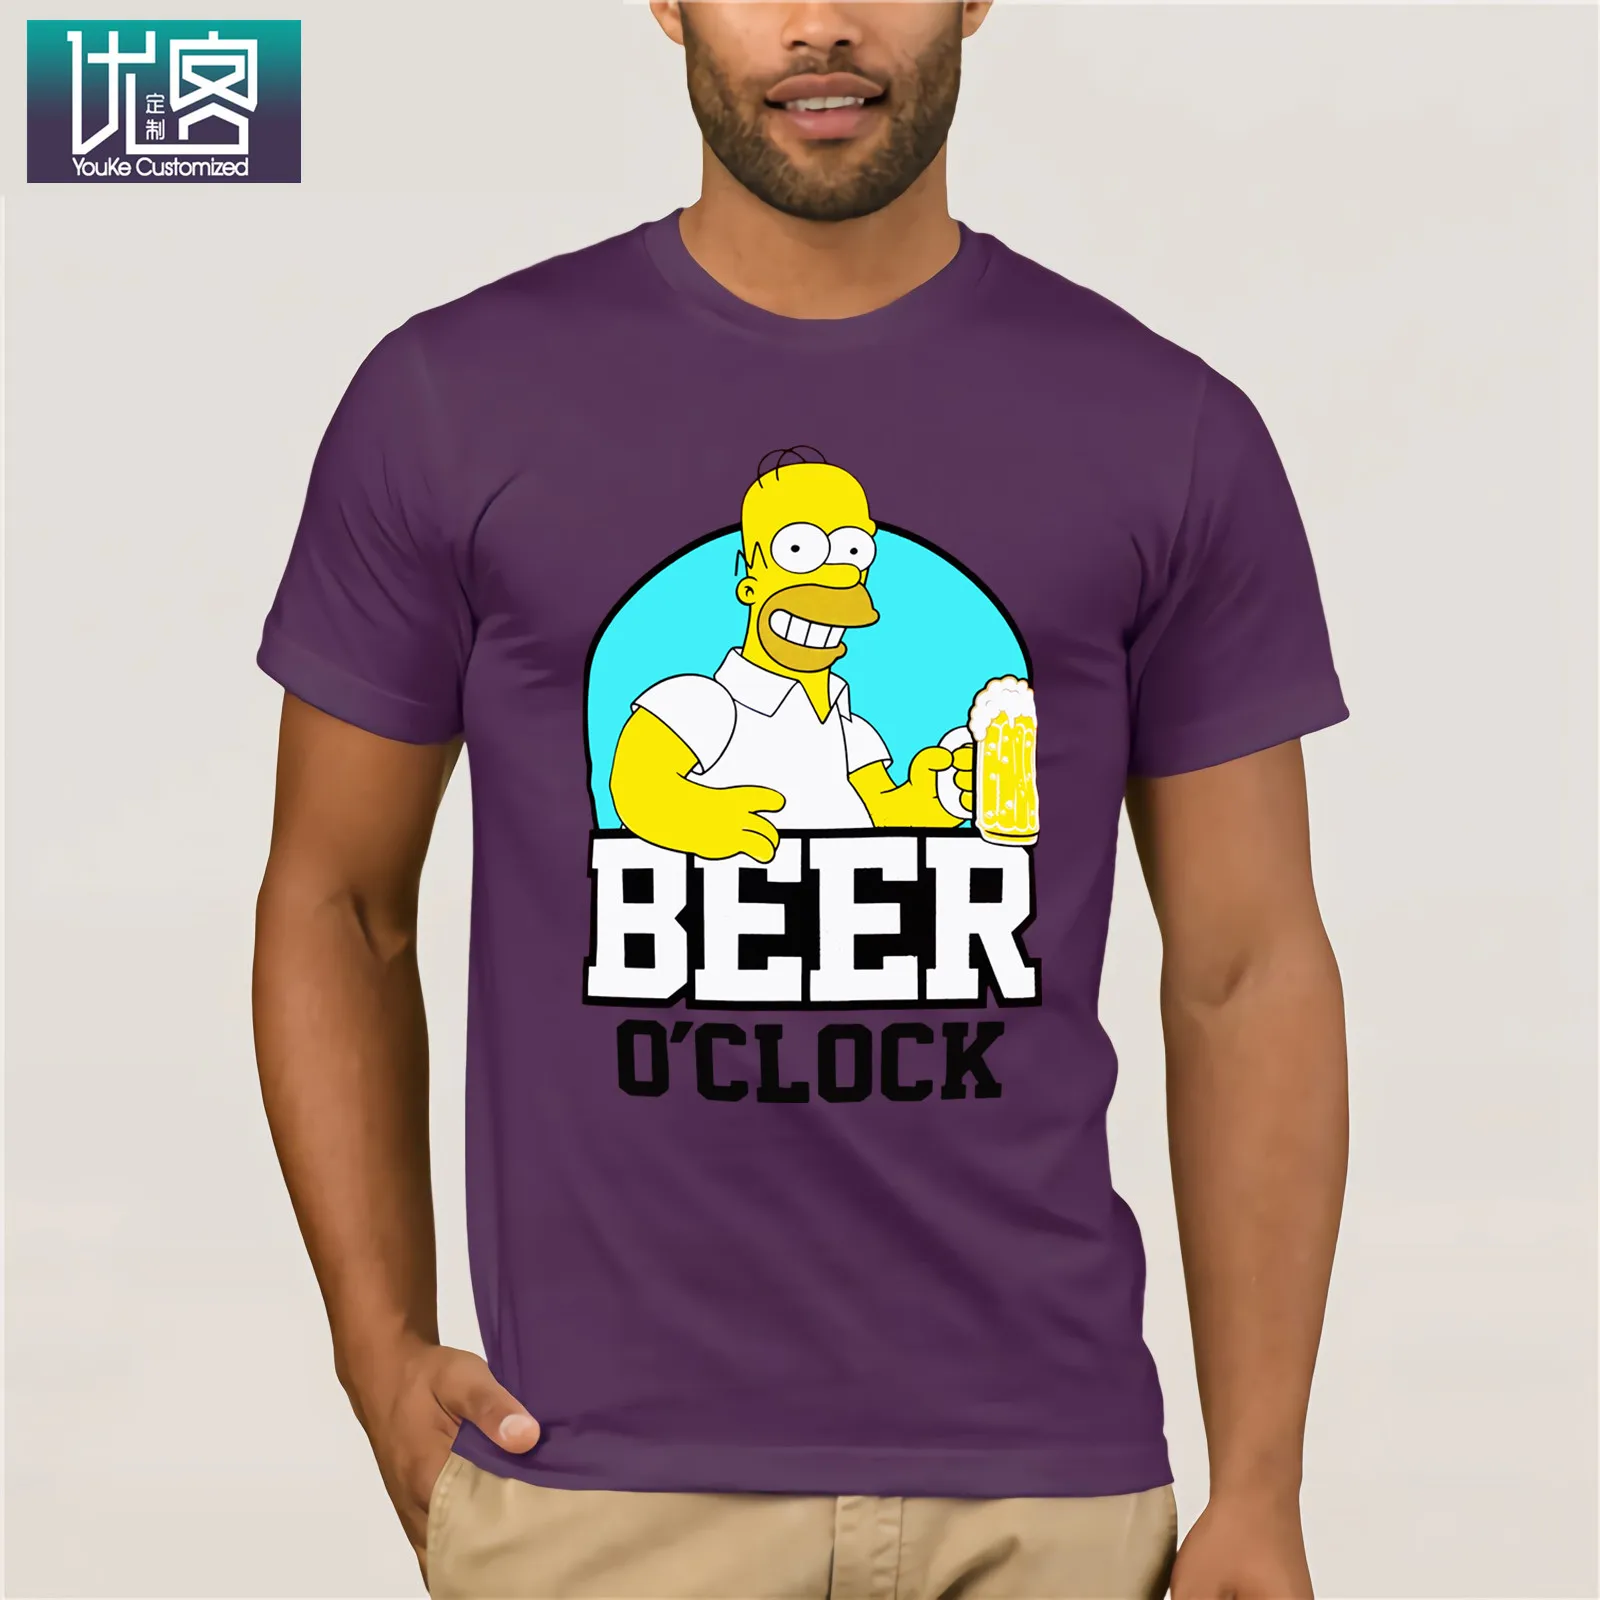 The Simpsons-BEER Clock-Homer Simpson, Мужская футболка, красные размеры, S-XXL, Забавные футболки, хлопковые топы, футболка, винтажный вырез лодочкой - Цвет: purple